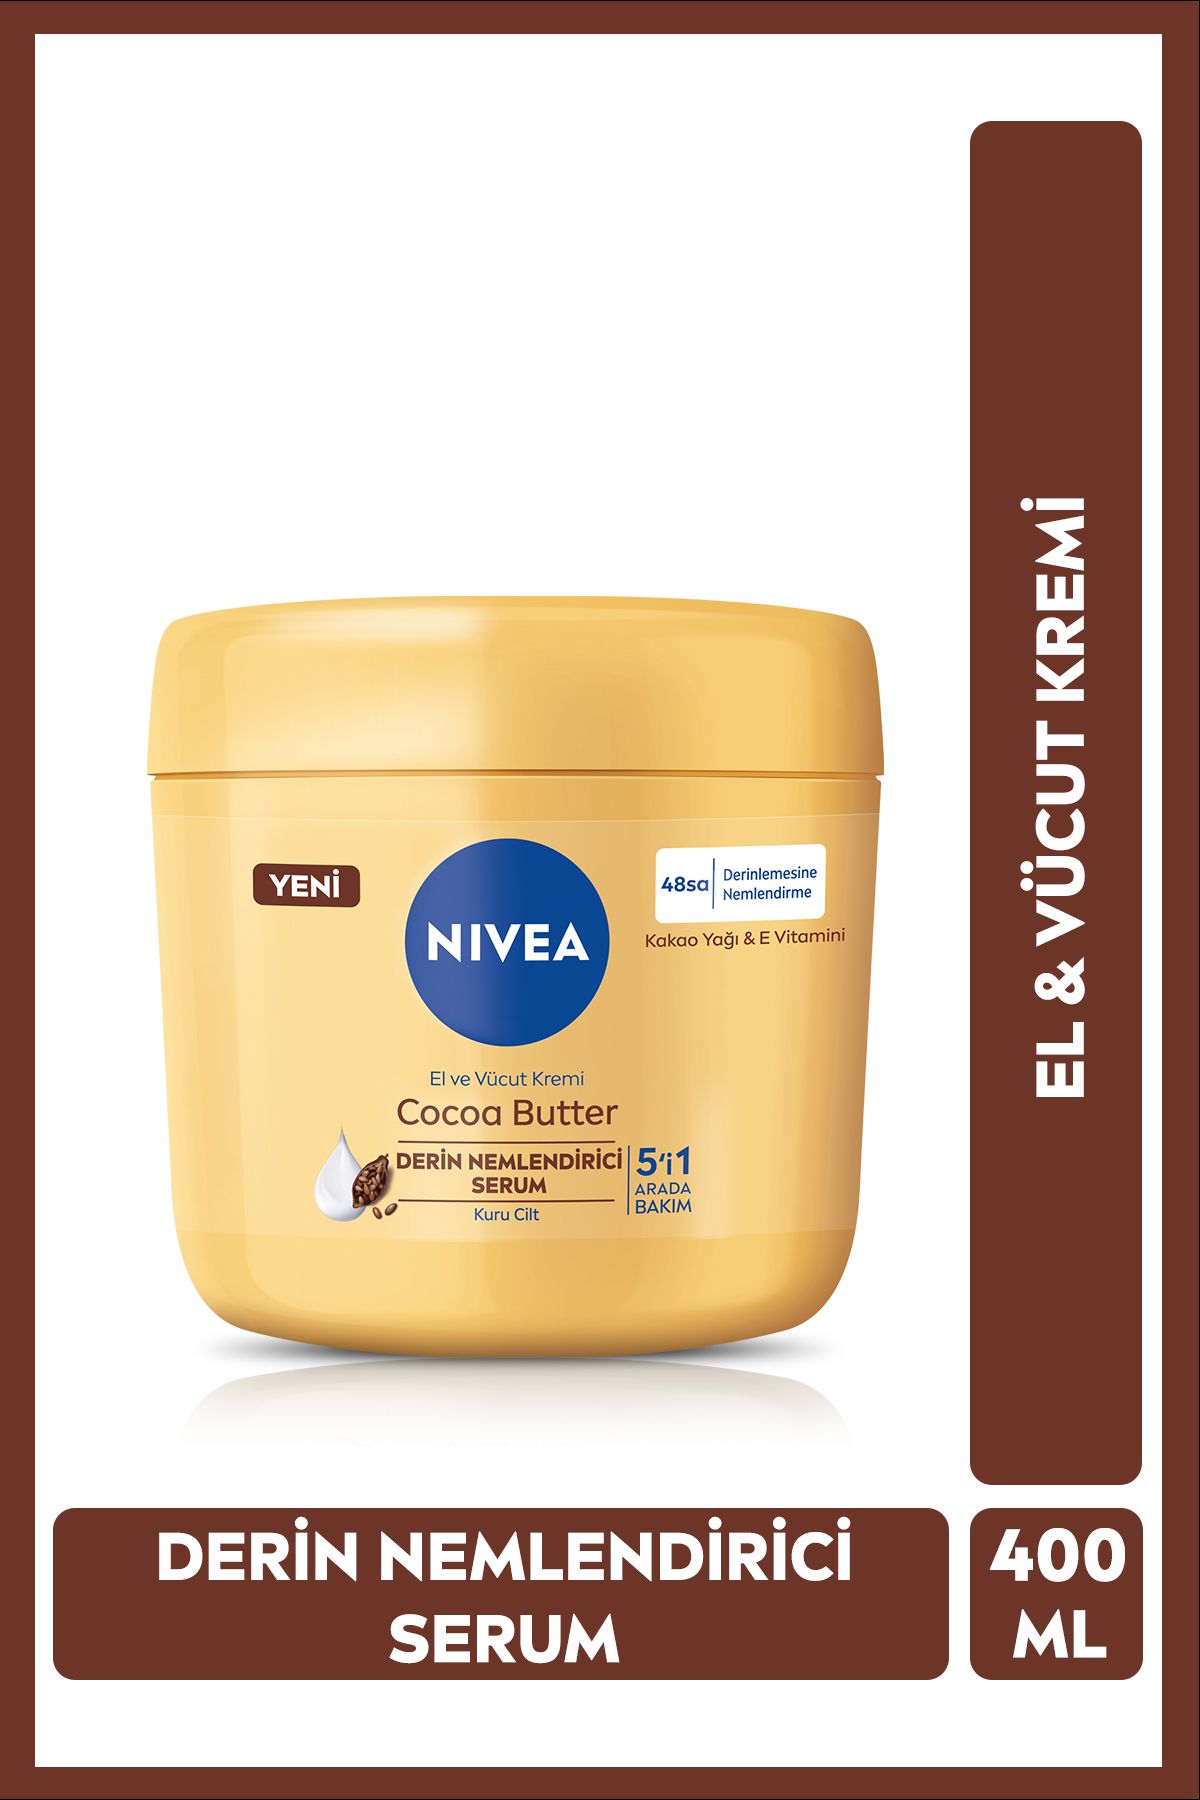 NIVEA El Ve Vücut Bakım Kremi Cocoa Butter 400ml, 48 Saat Nemlendirici Serum, E Vitamini, Kakao Yağı